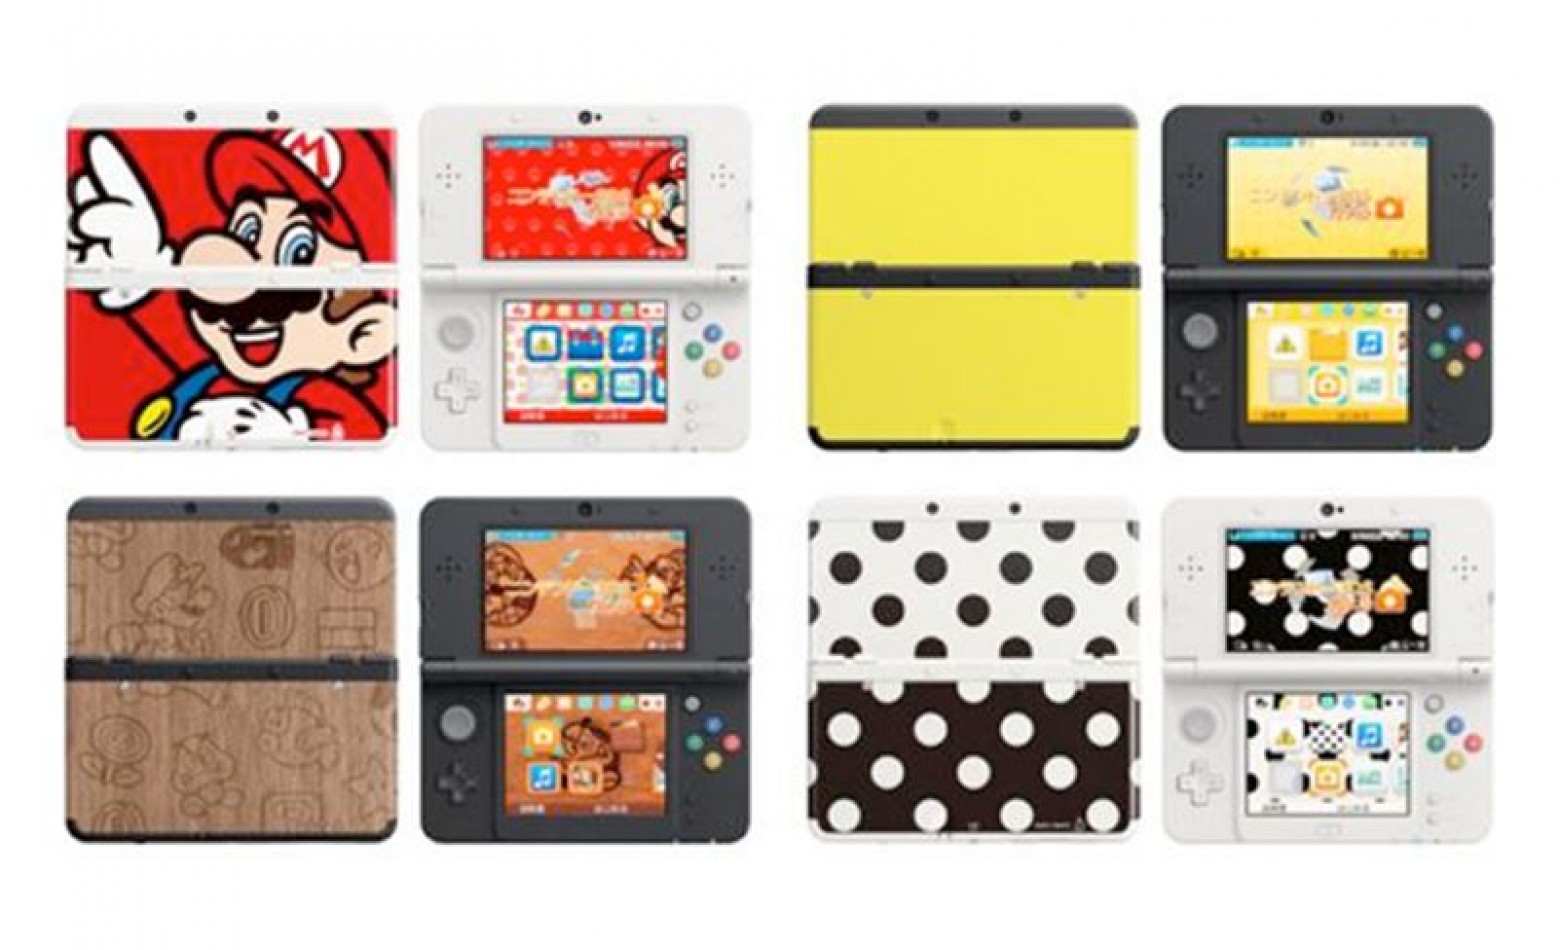 Novo 3DS também vem cheio de opções de personalização